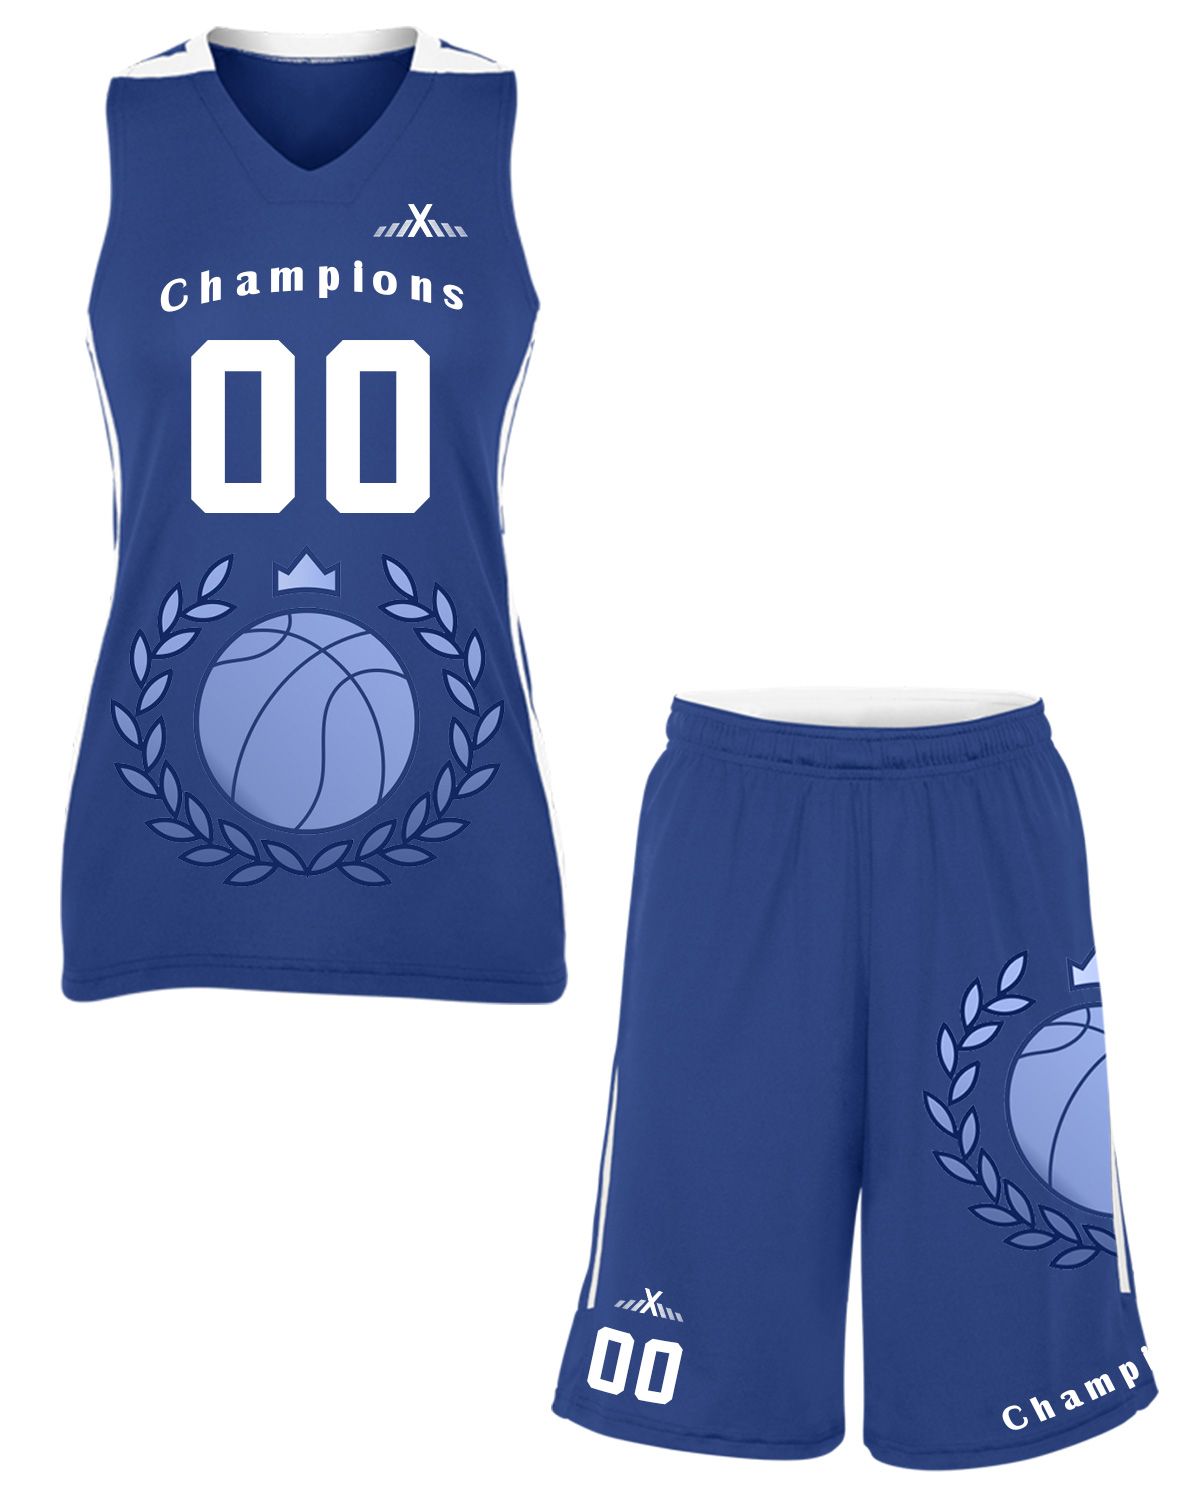 ml jersey design basketball